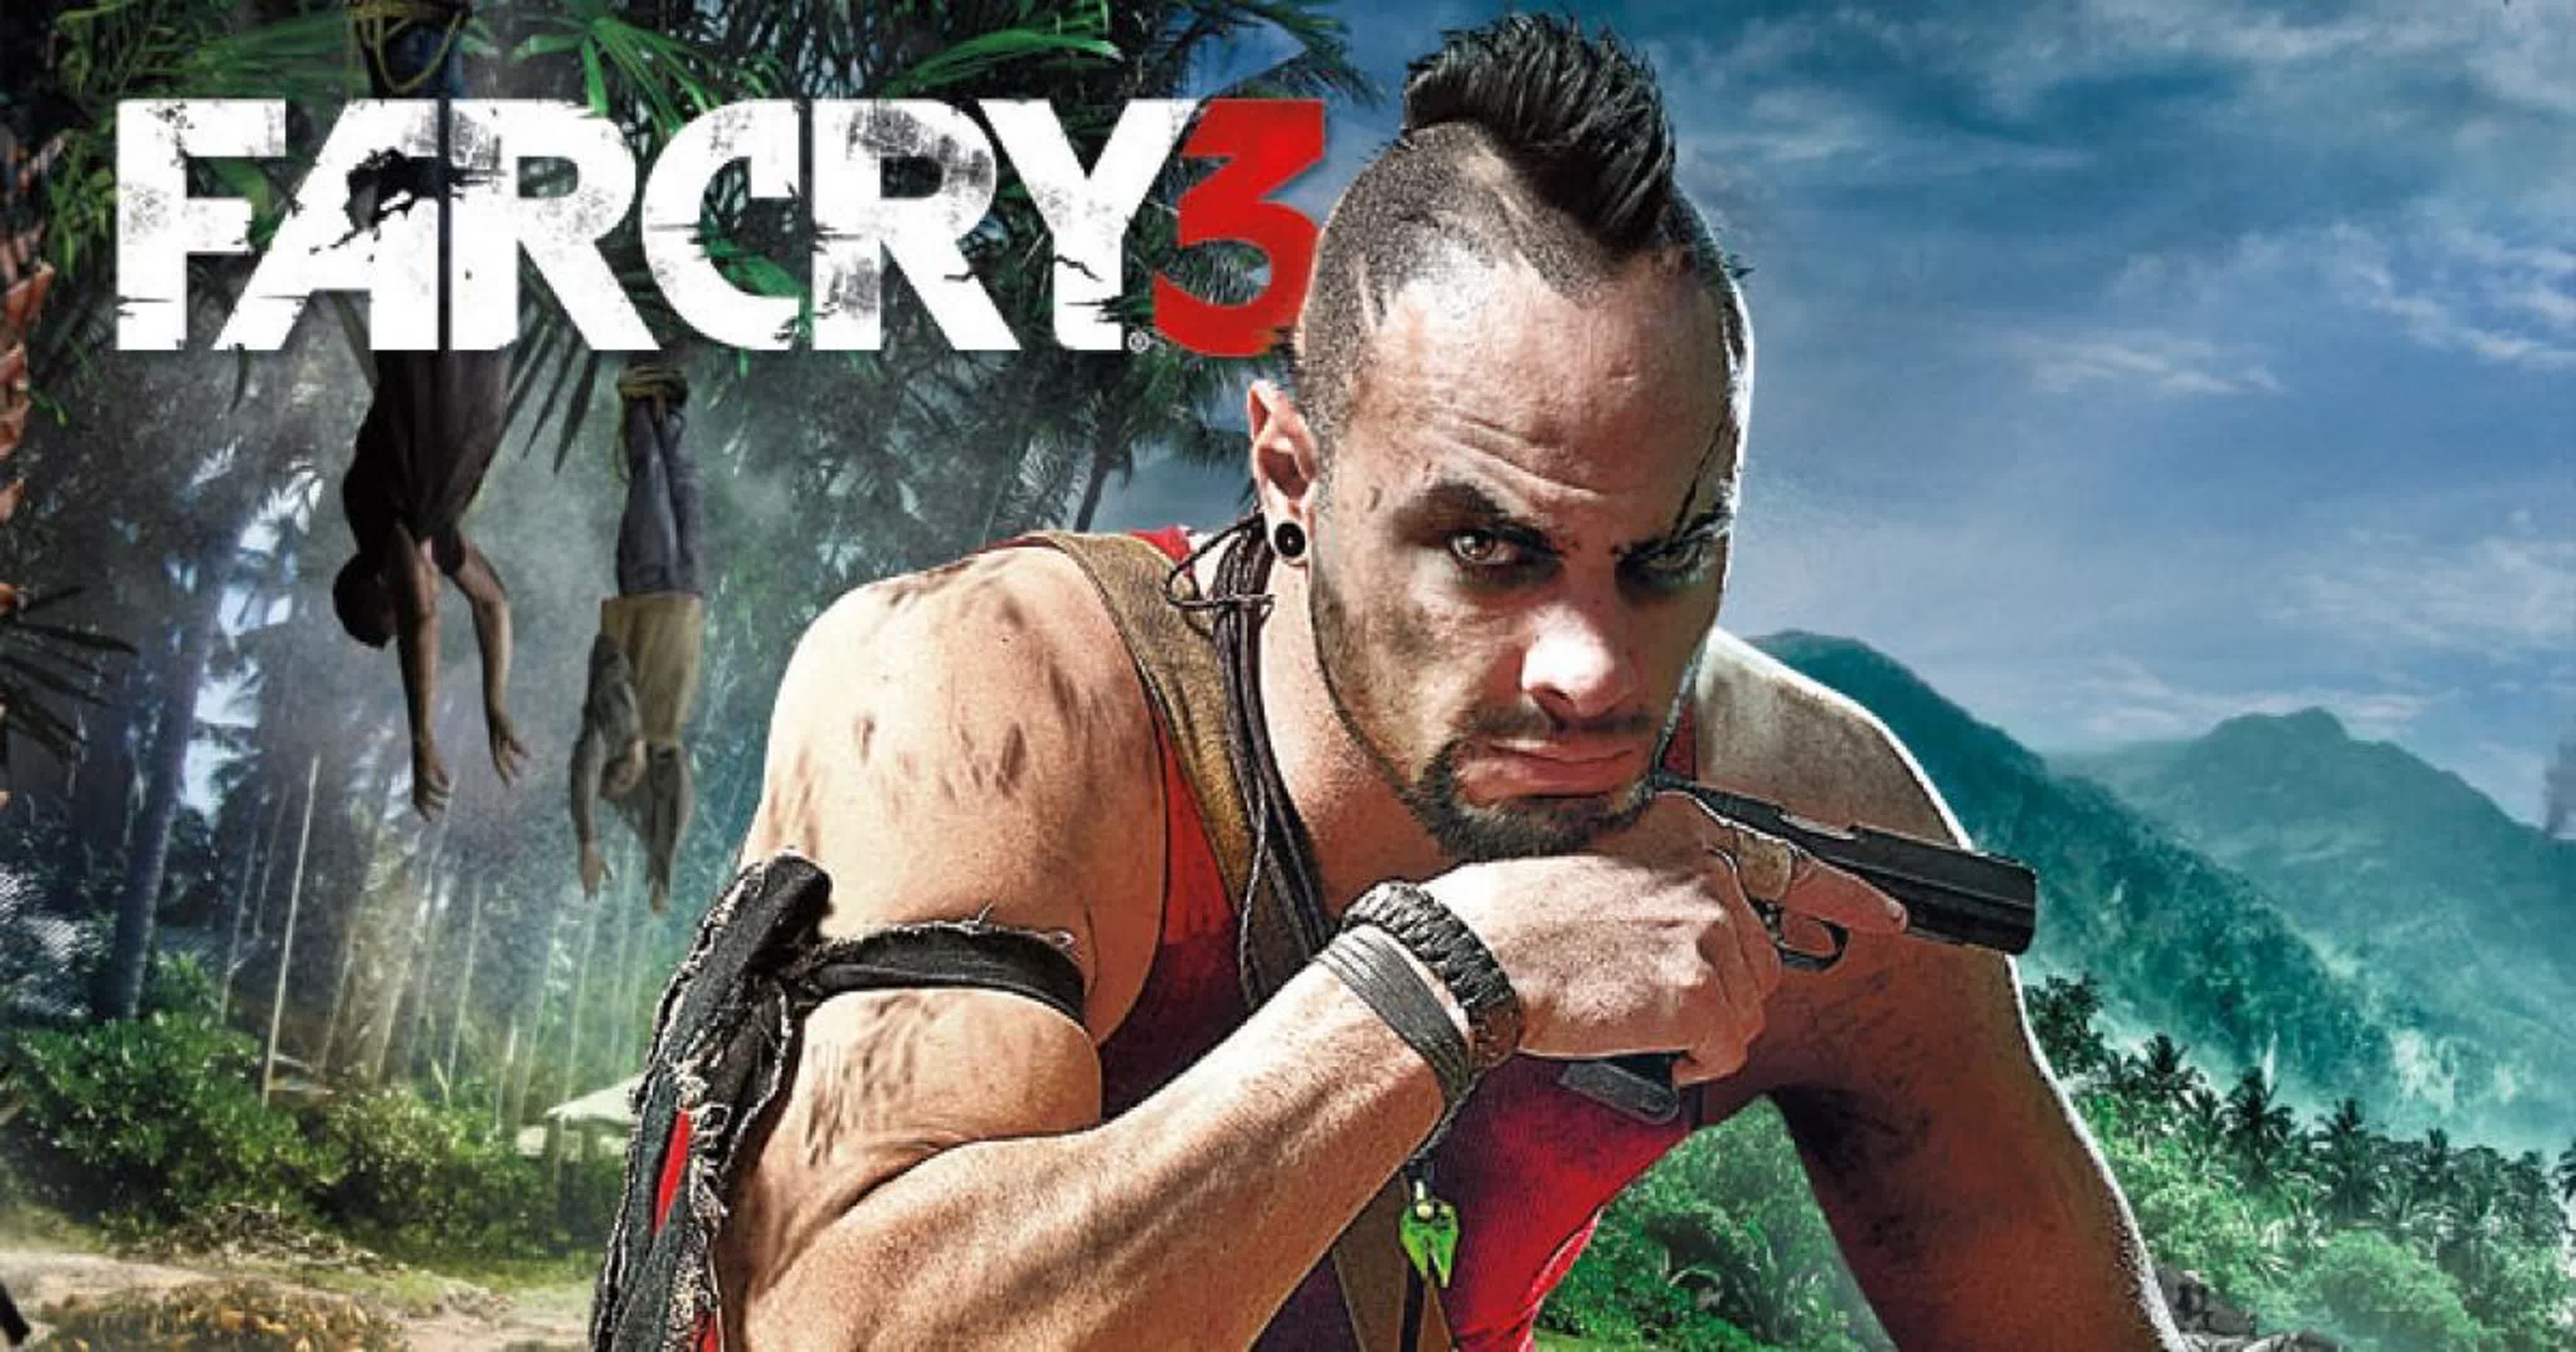 Far Cry 3 / STEAM ОФФЛАЙН АККАУНТ / ГАРАНТИЯ